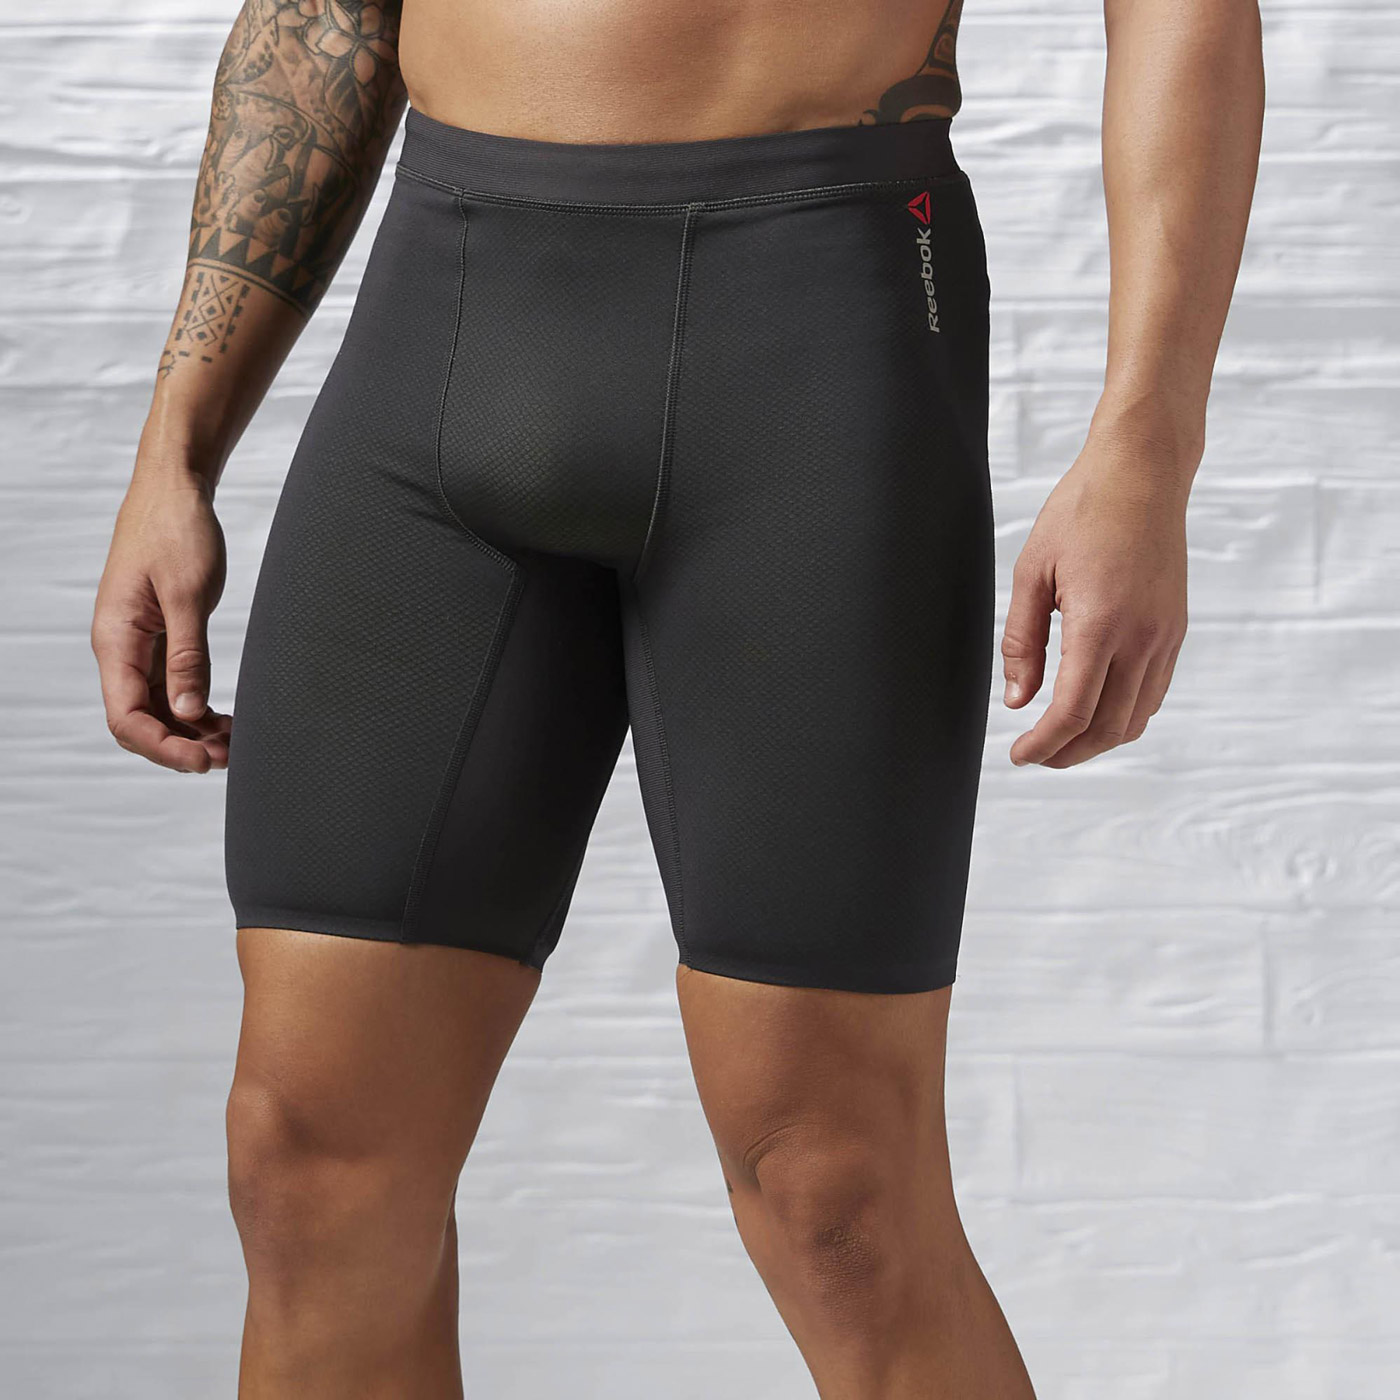 Men's compressive shorts